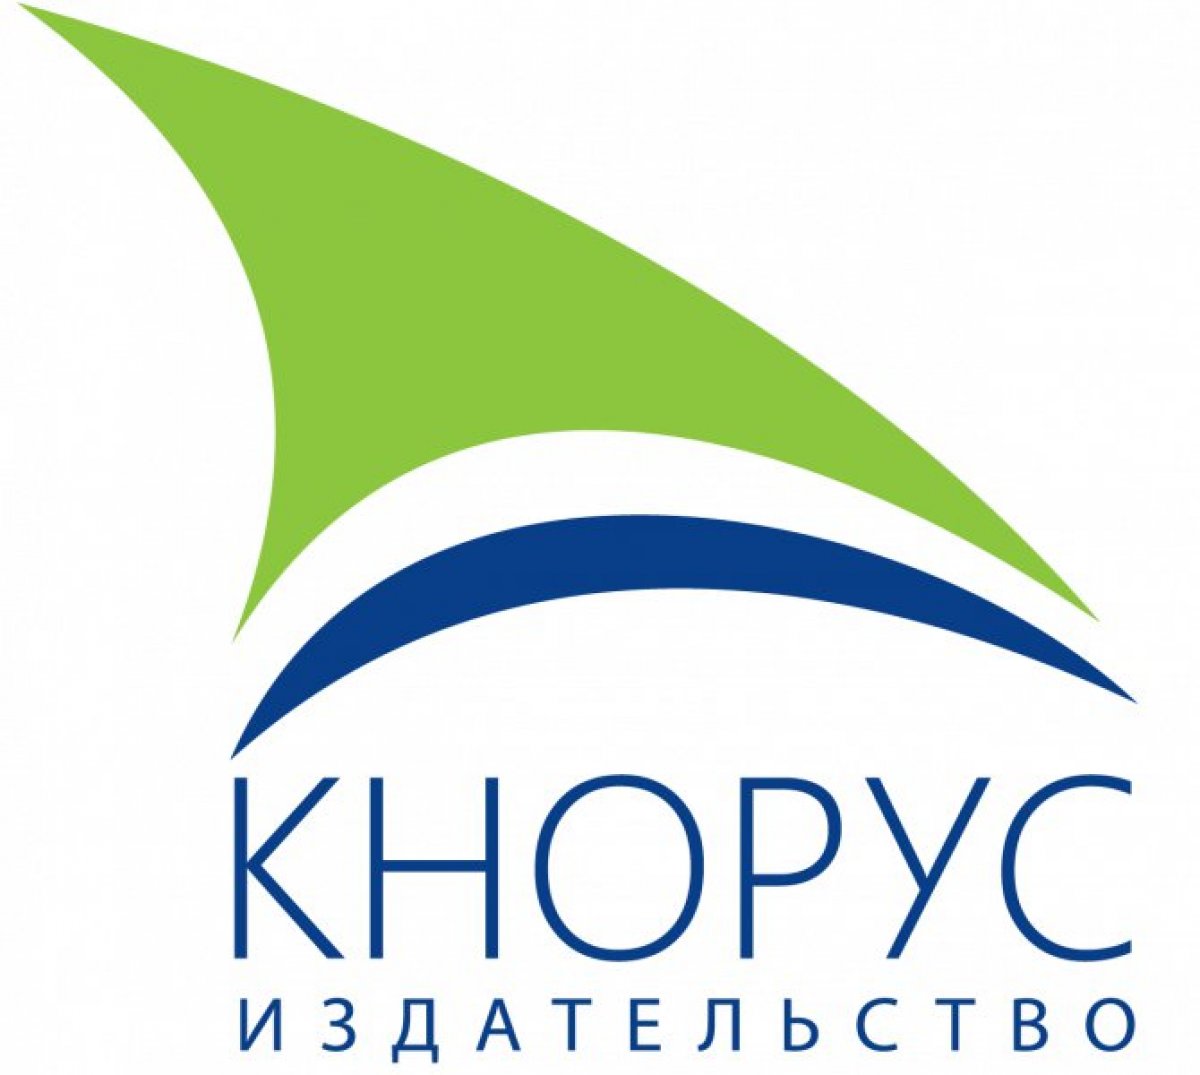 📚 28 мая состоится встреча с главным редактором издательства «Кнорус» Э.В. Михальским